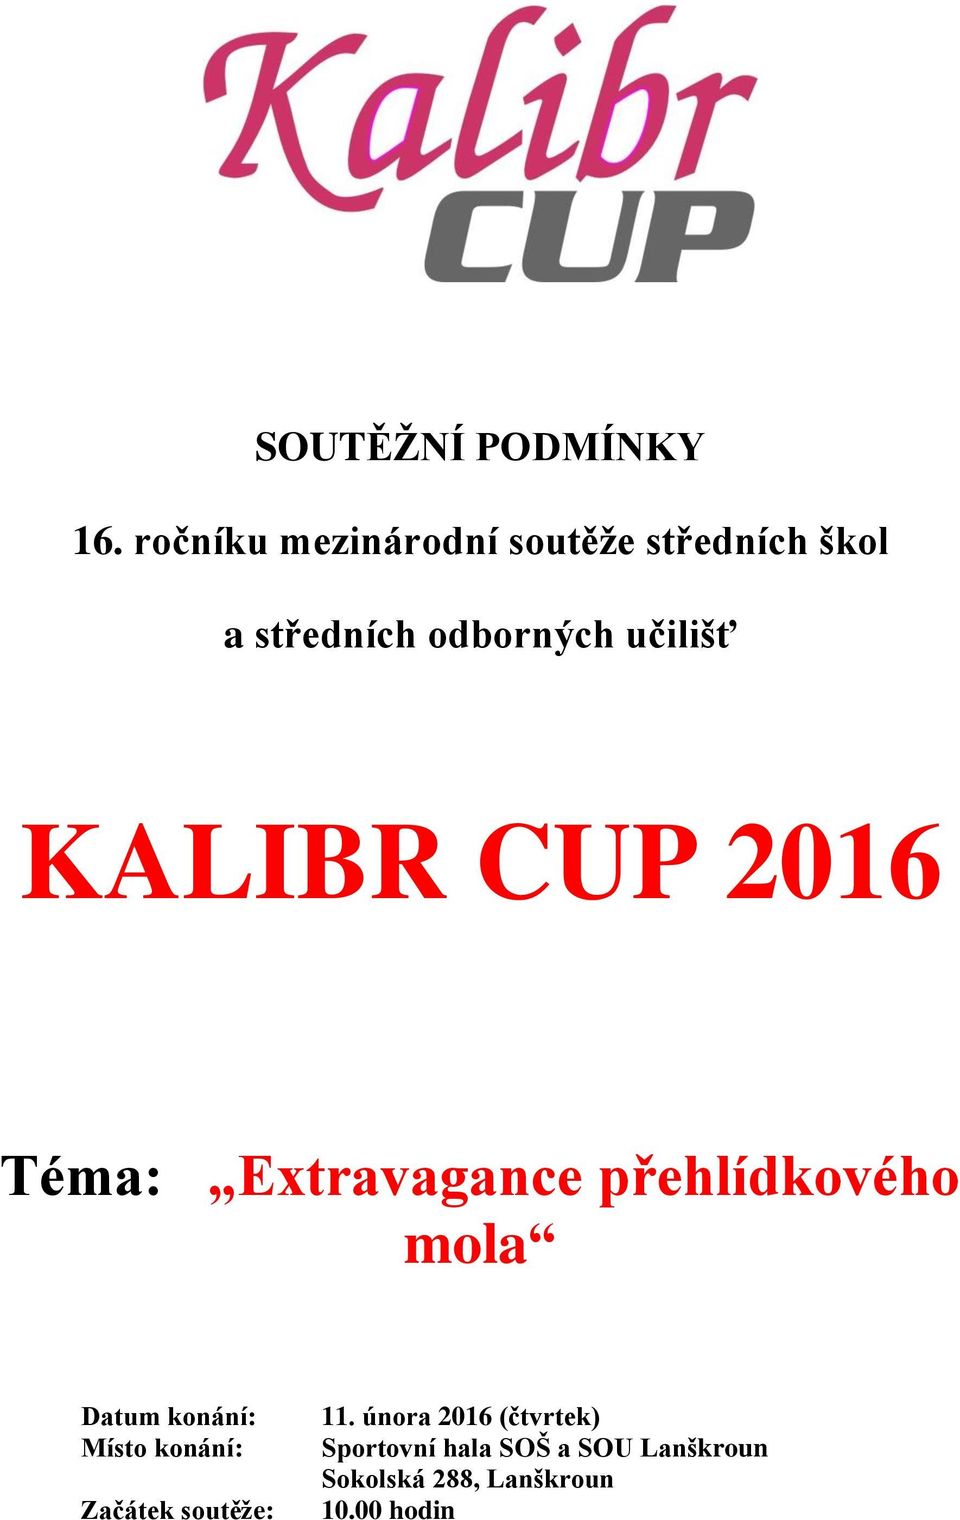 KALIBR CUP 2016 Téma: Extravagance přehlídkového mola Datum konání: